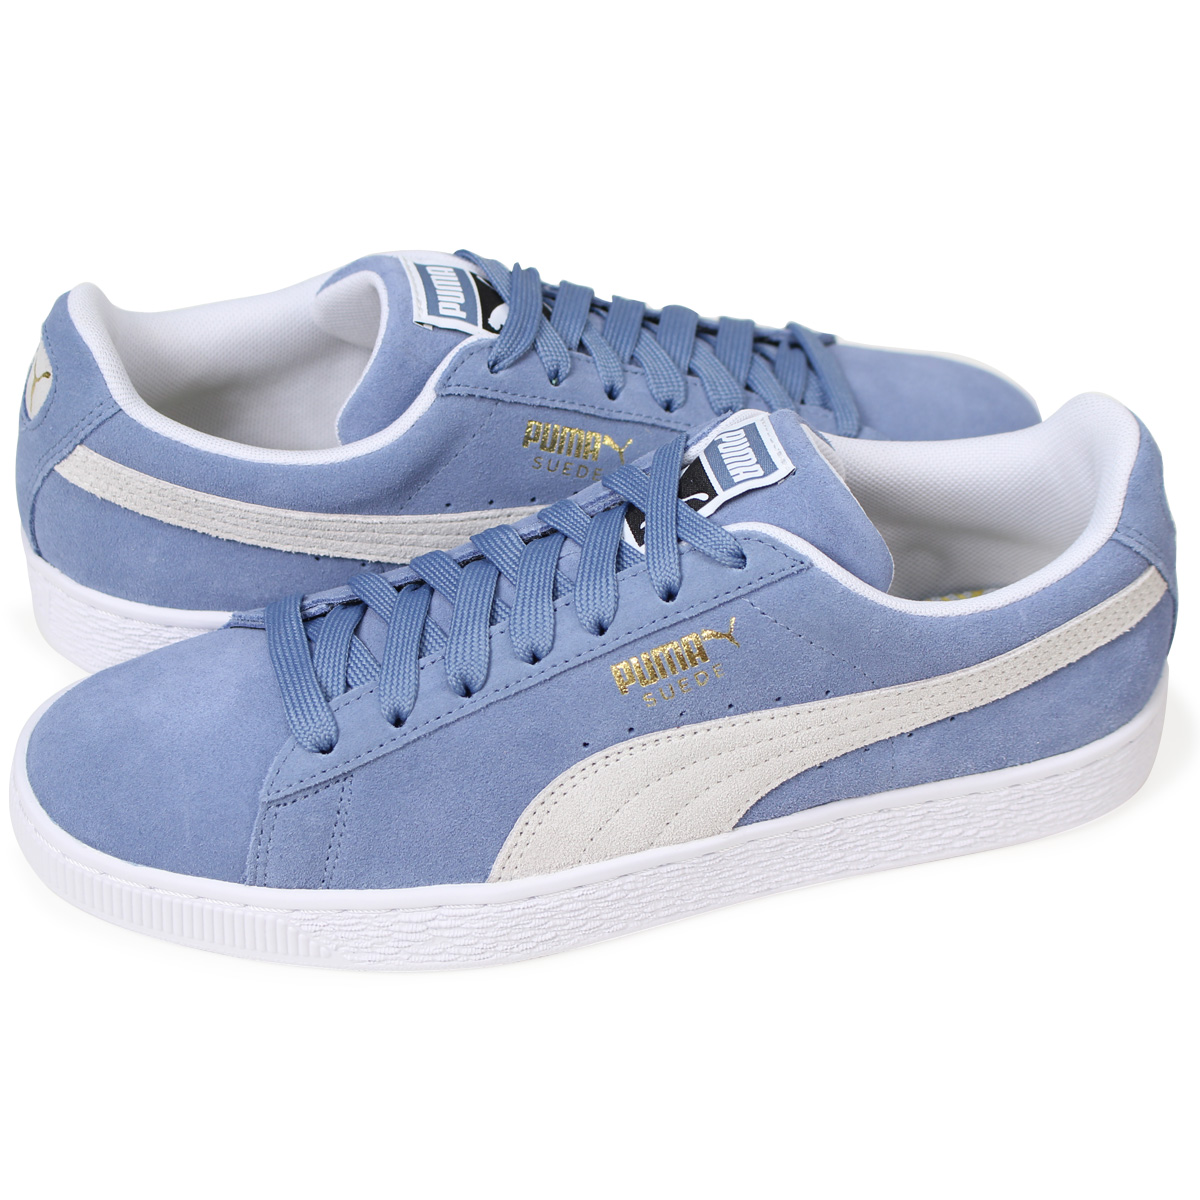 puma blue shoes